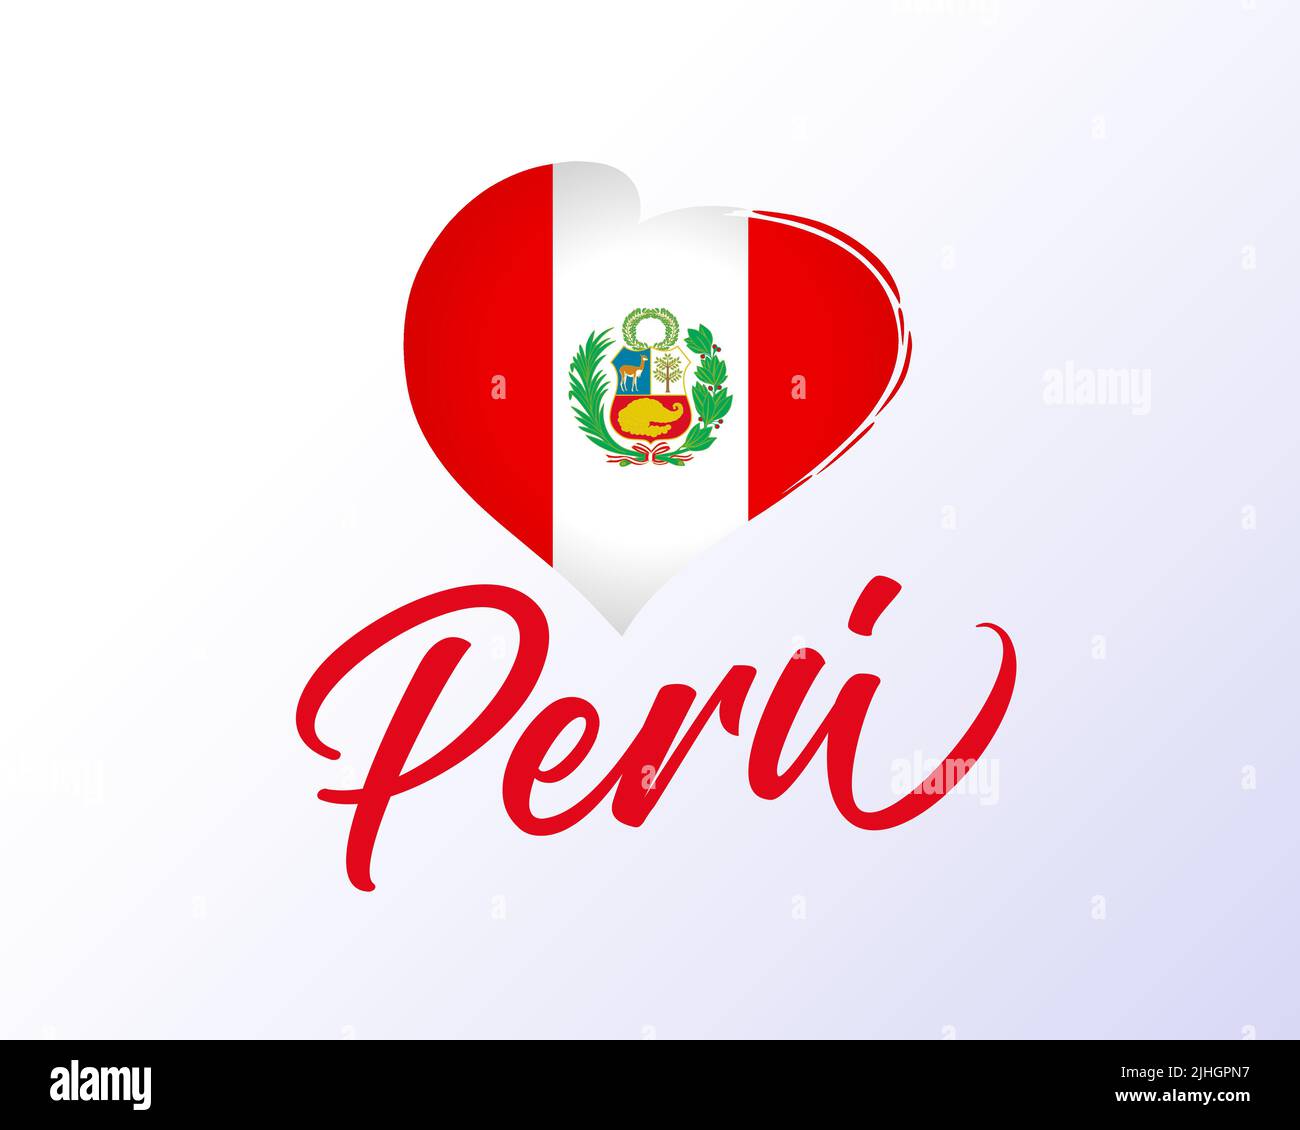 Peru, 28. Juli Unabhängigkeitstag mit Flagge im Herzen. Felices Fiestas Patrias, Übersetzung - Happy National Holiday Peru. Vektorgrafik Stock Vektor